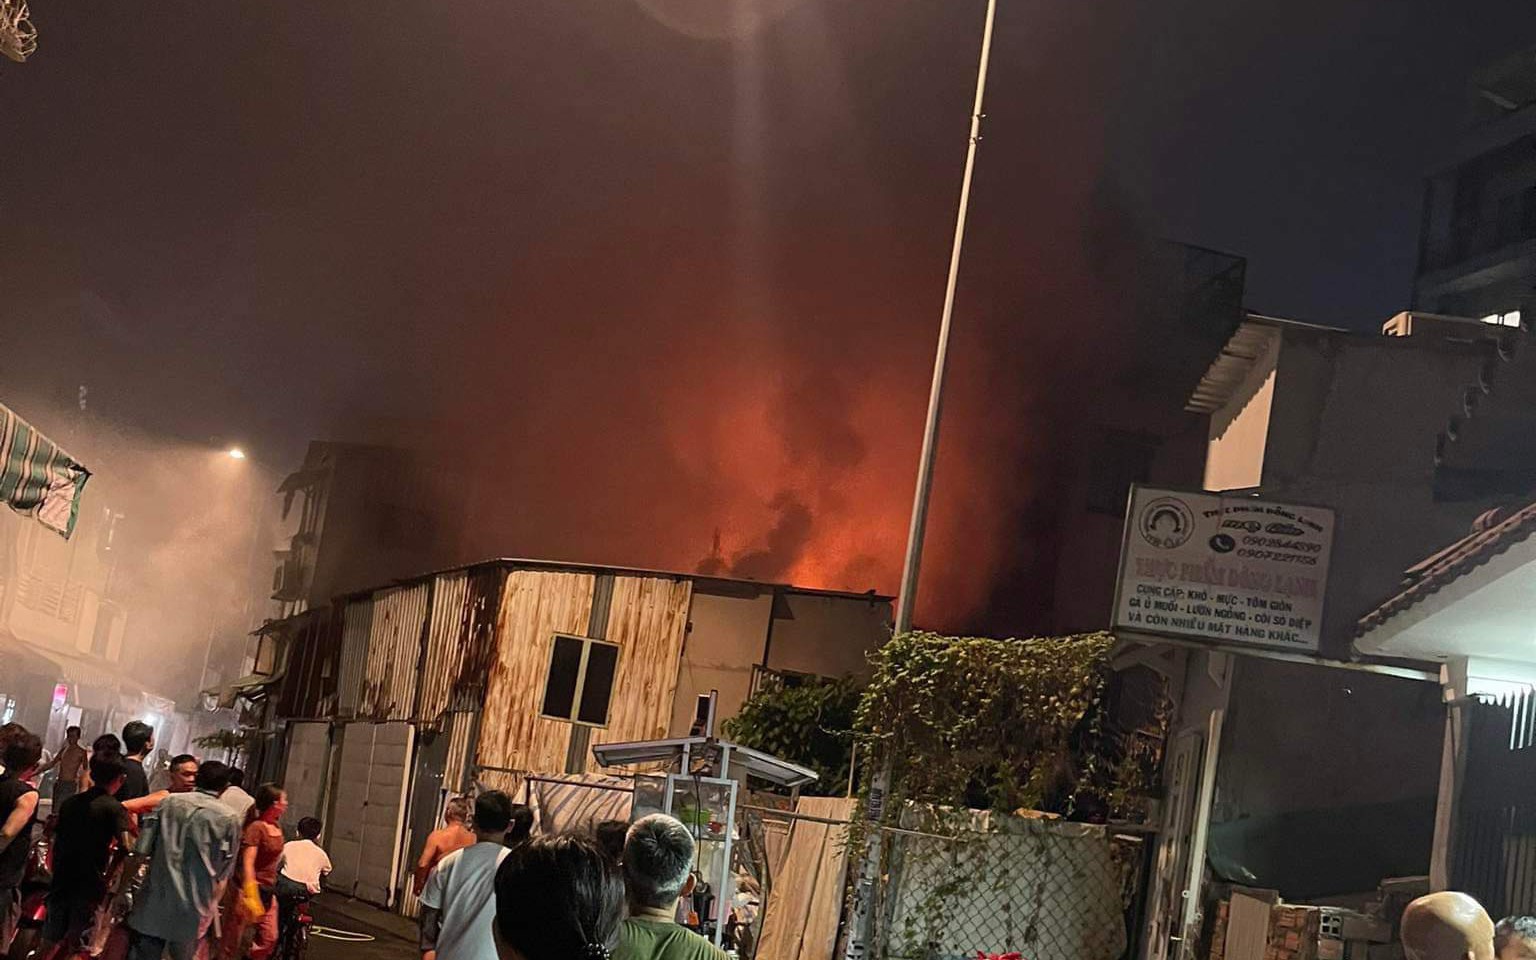 Cháy nhà trong hẻm ở quận Bình Thạnh, TP.HCM, 1 người tử vong 